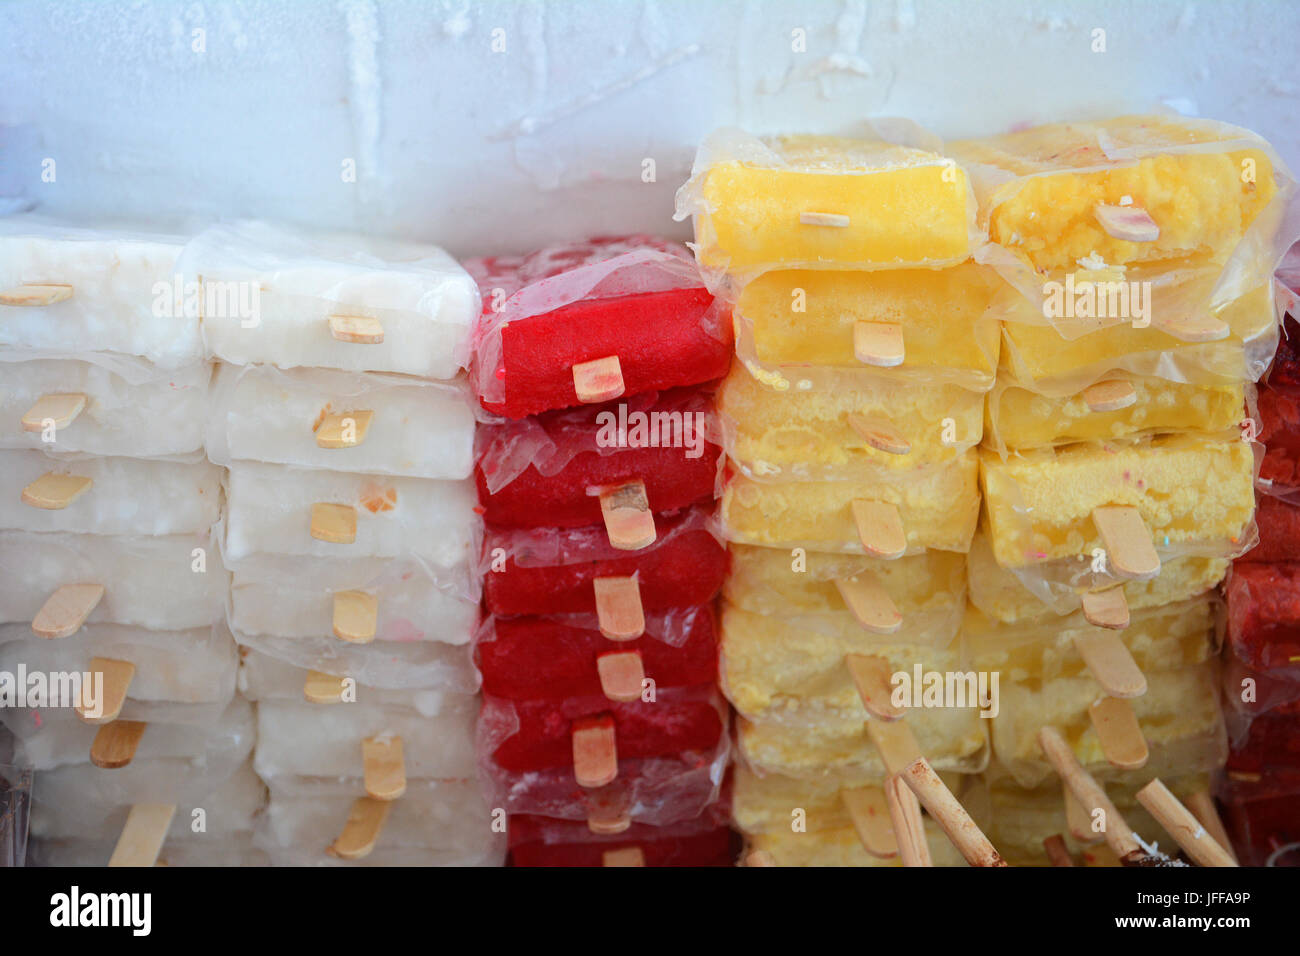 Gefrorene bunte Eisfrucht aromatisierte Eis-Eis-Eis mit Stöcken in gestapelt Kühler für Display Stockfoto